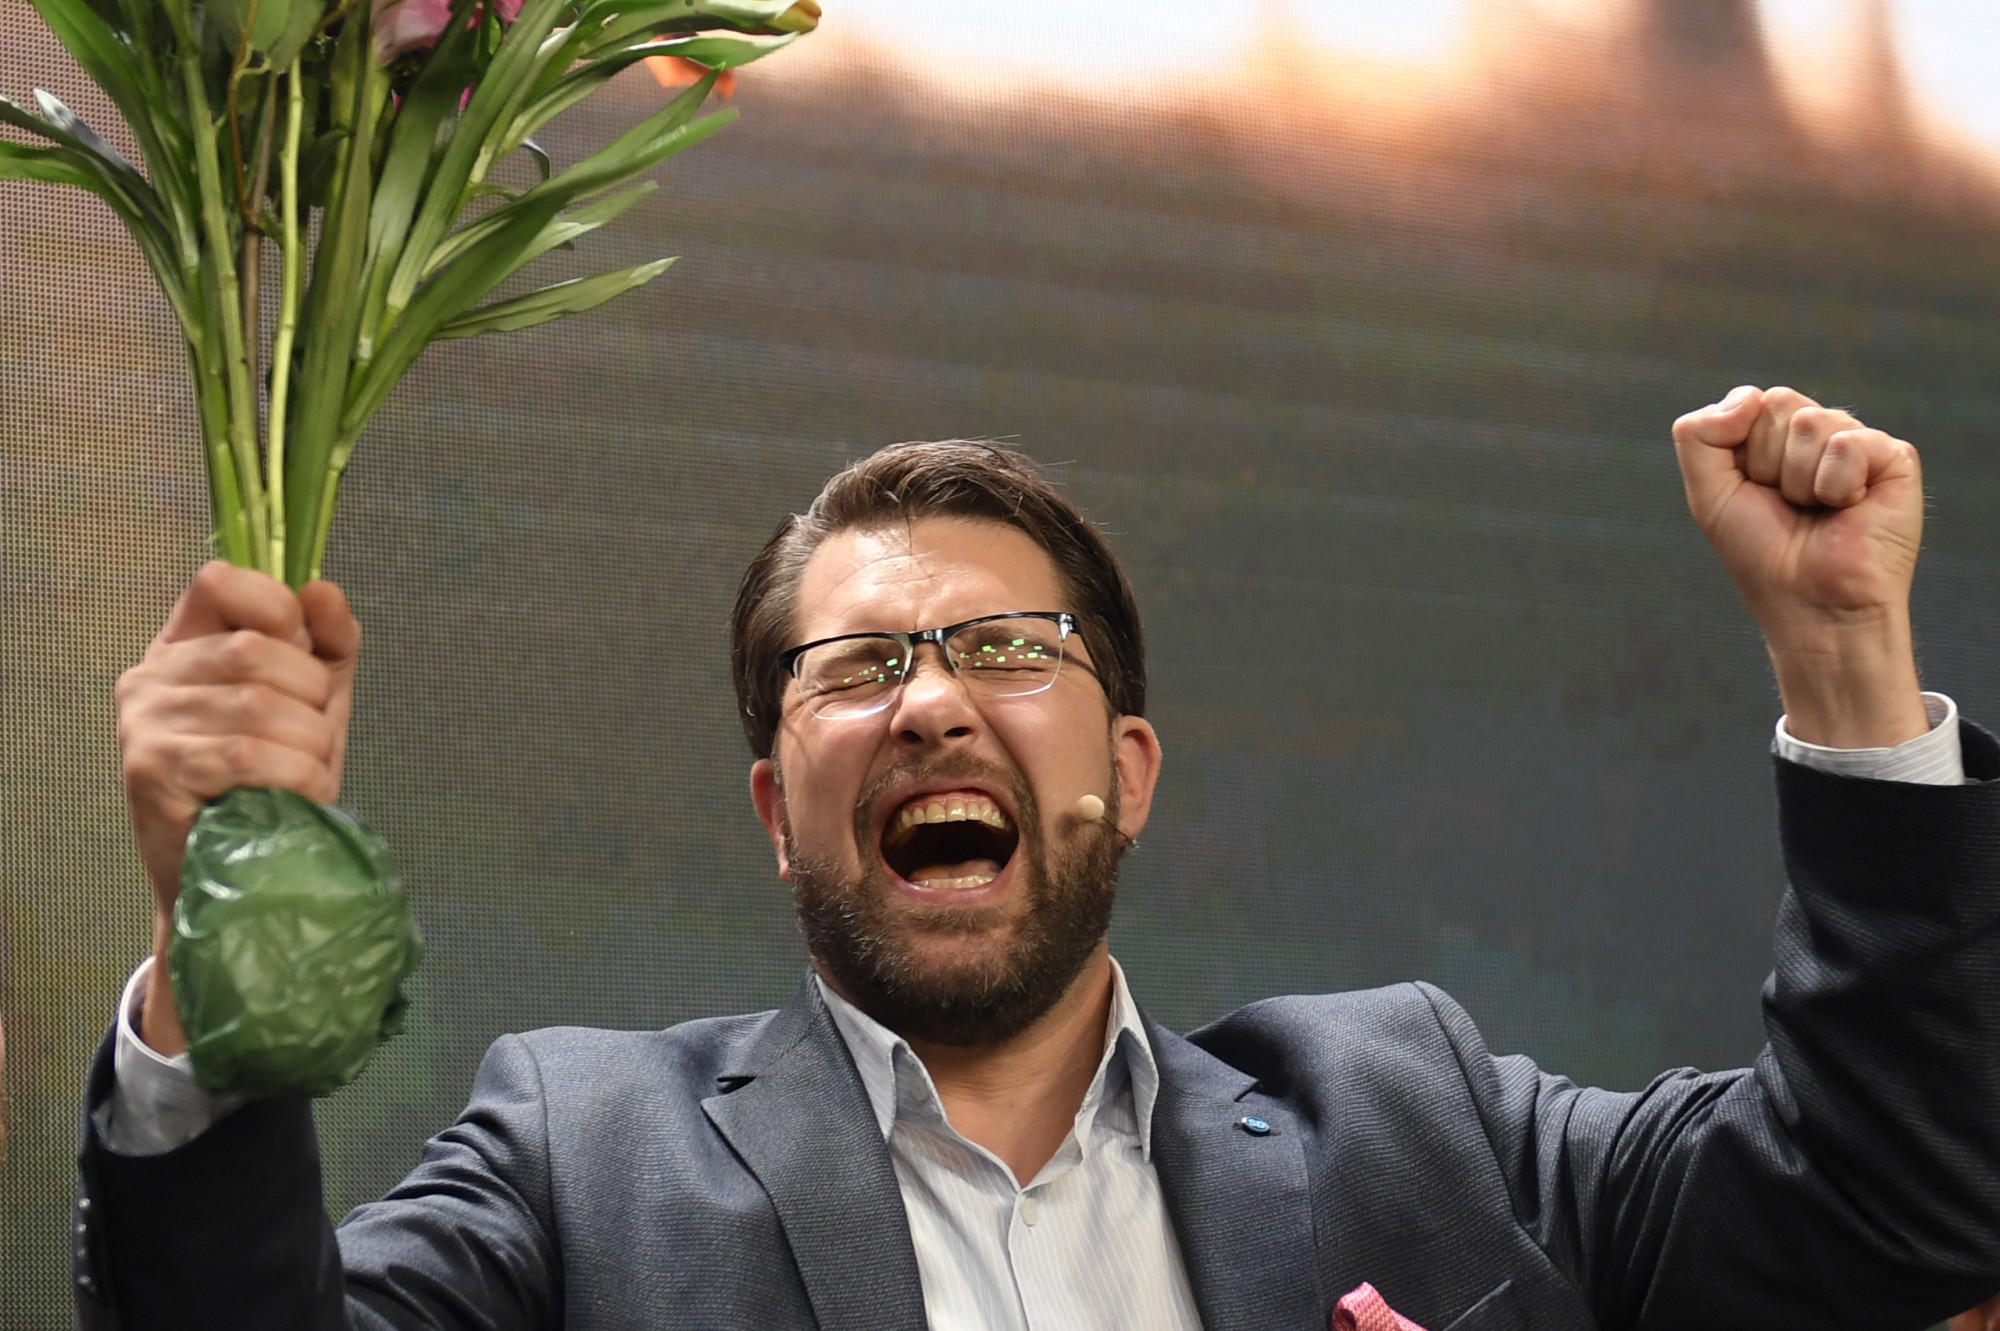 Óriási áttörést ért el a svéd szélsőjobb a vasárnapi választáson